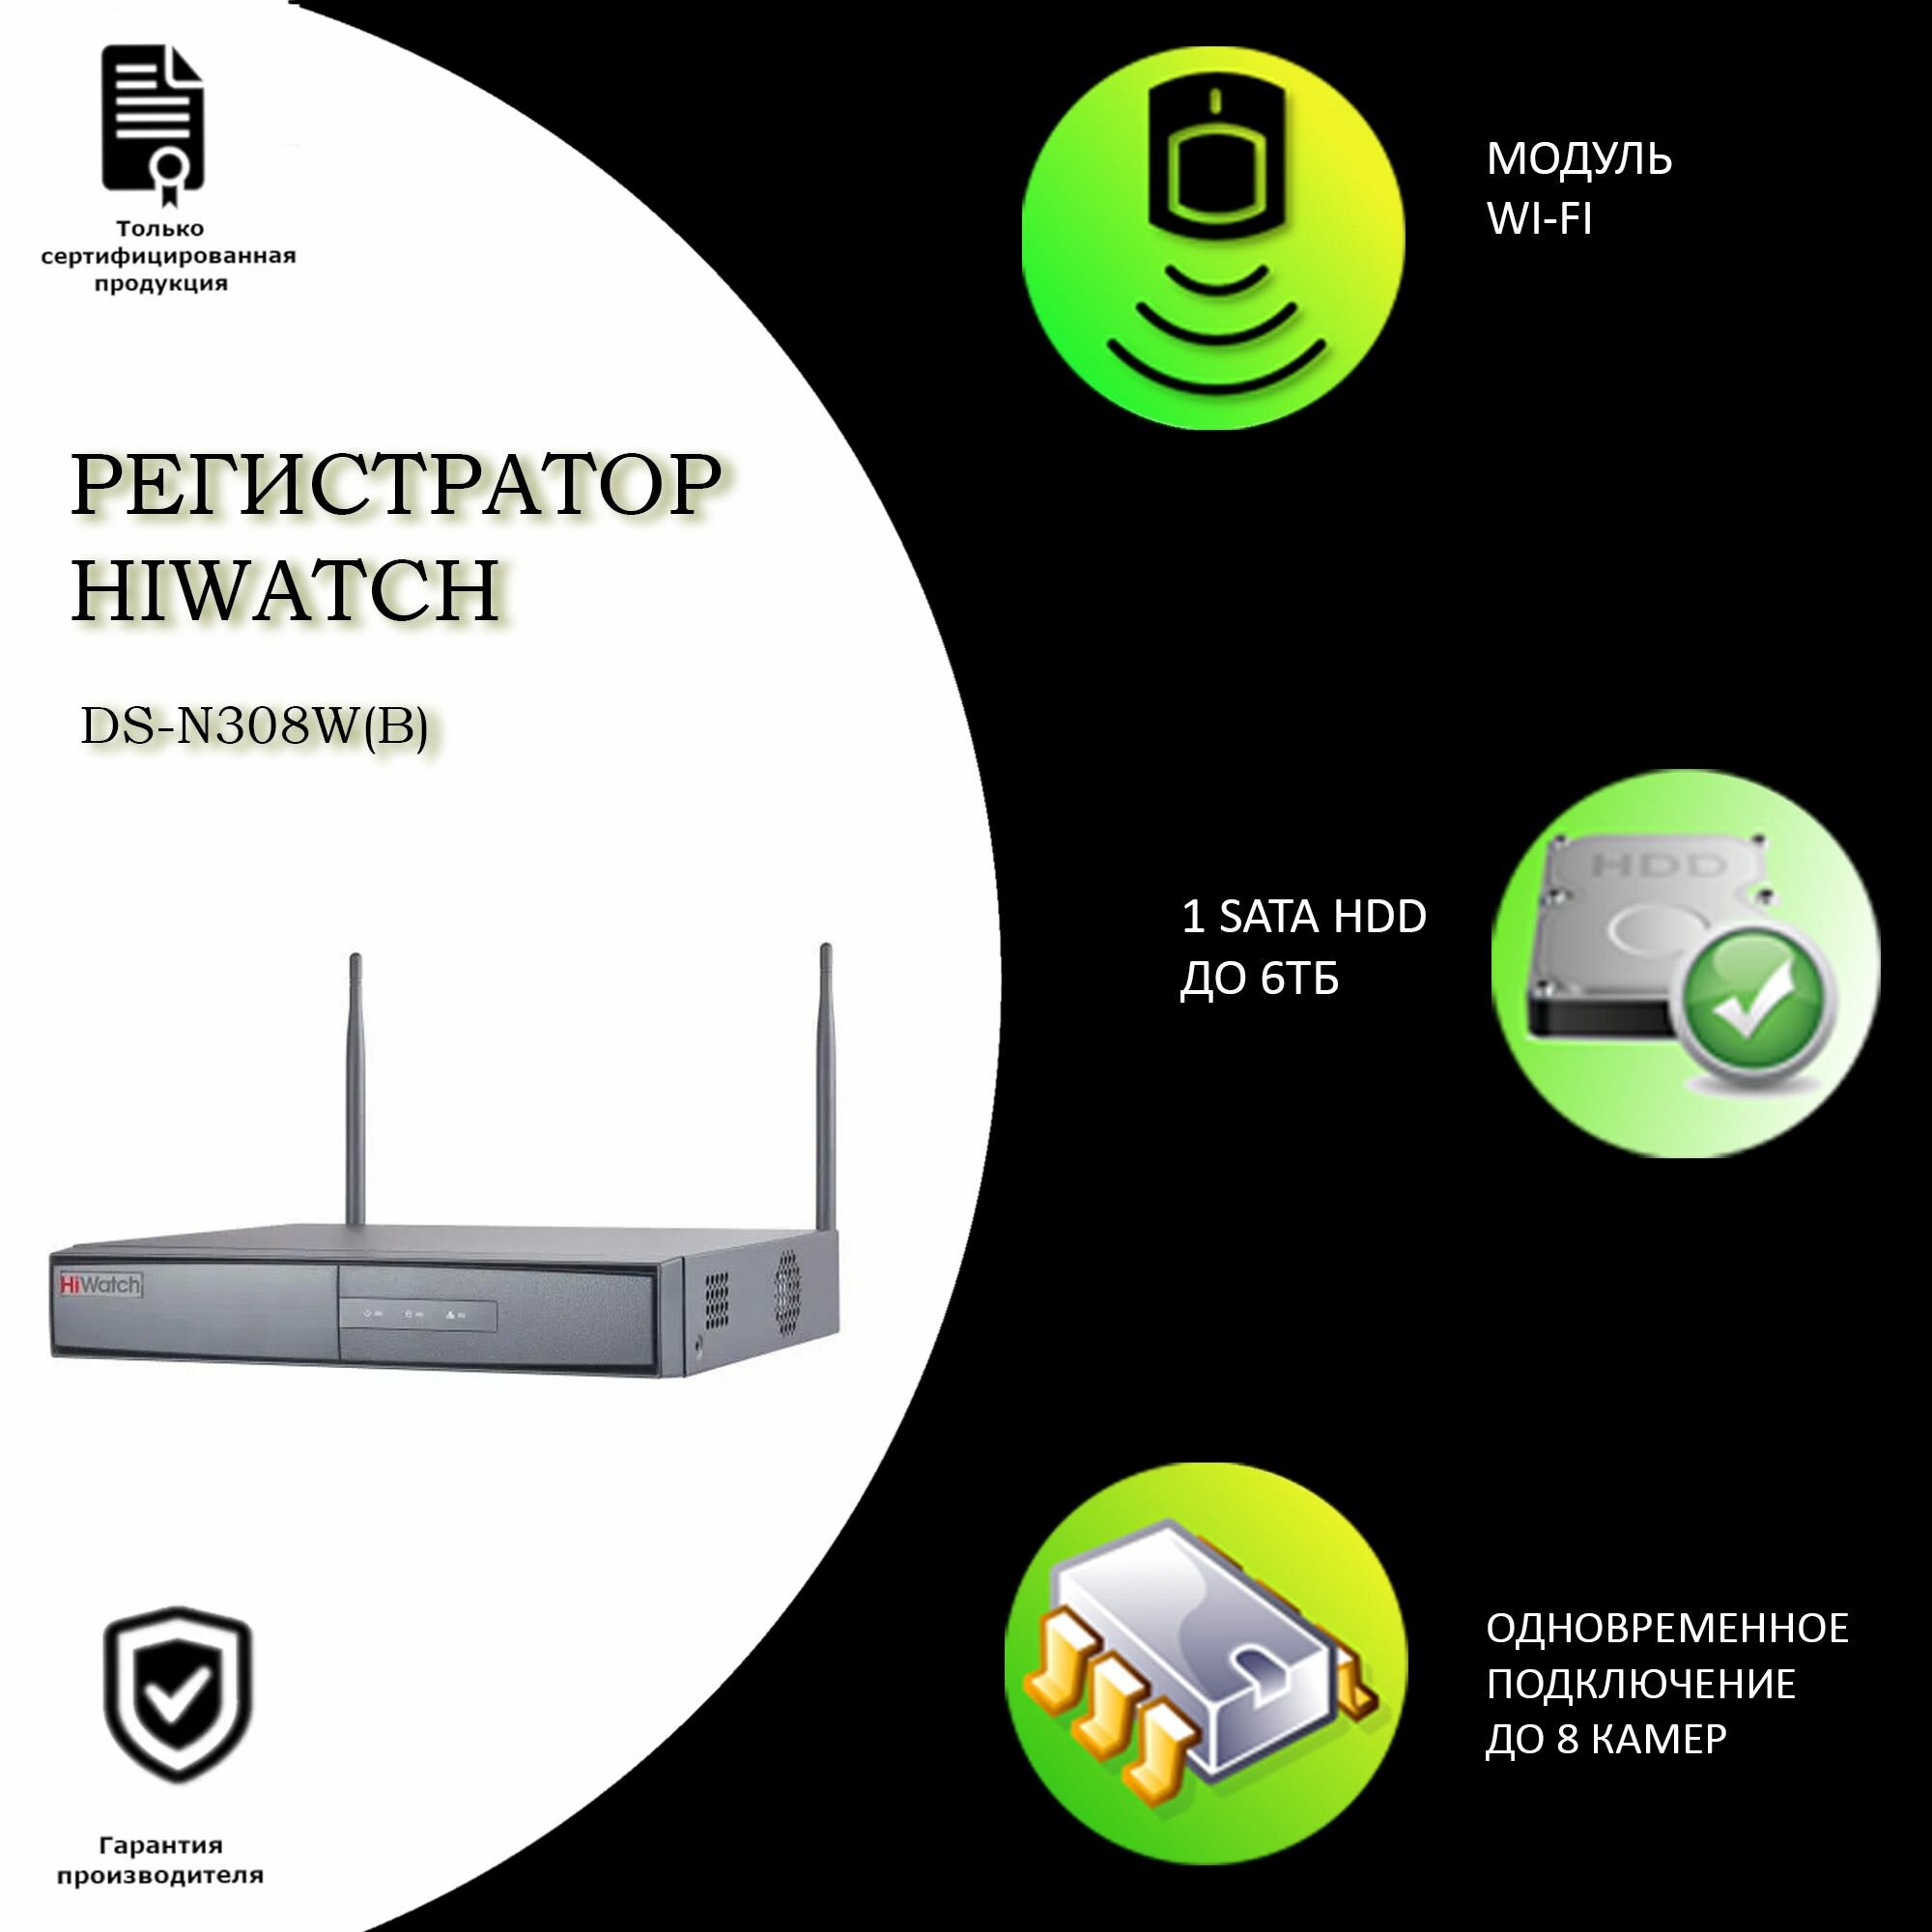 8-канальный IP-регистратор HIWATCH DS-N308W(B) WiFi 2.4ГГц